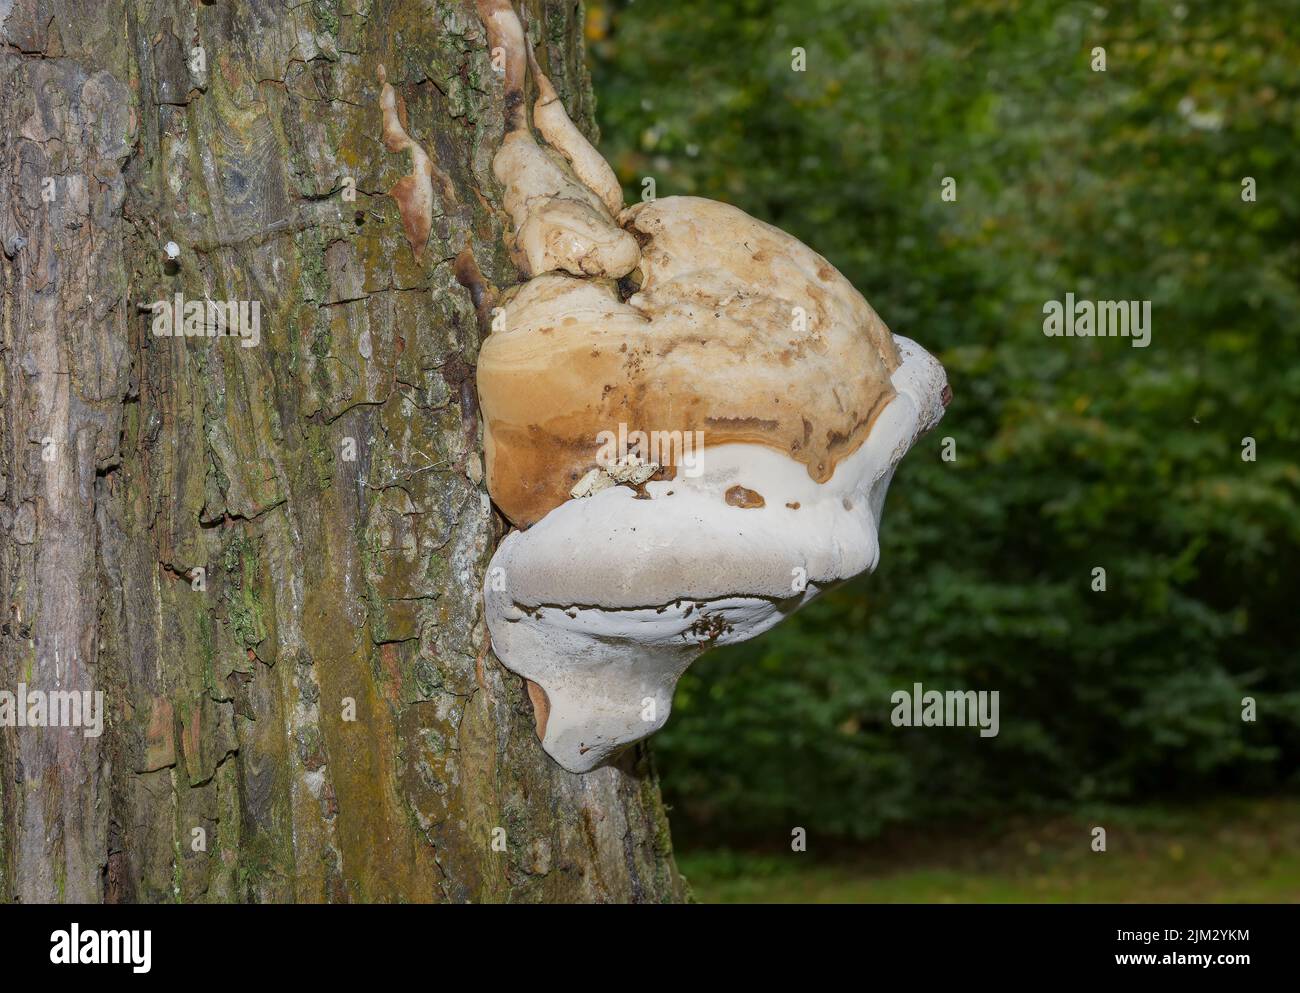 Fungo dello zoccolo (Fomes fomentarius) al tronco dell'albero, Germania Foto Stock